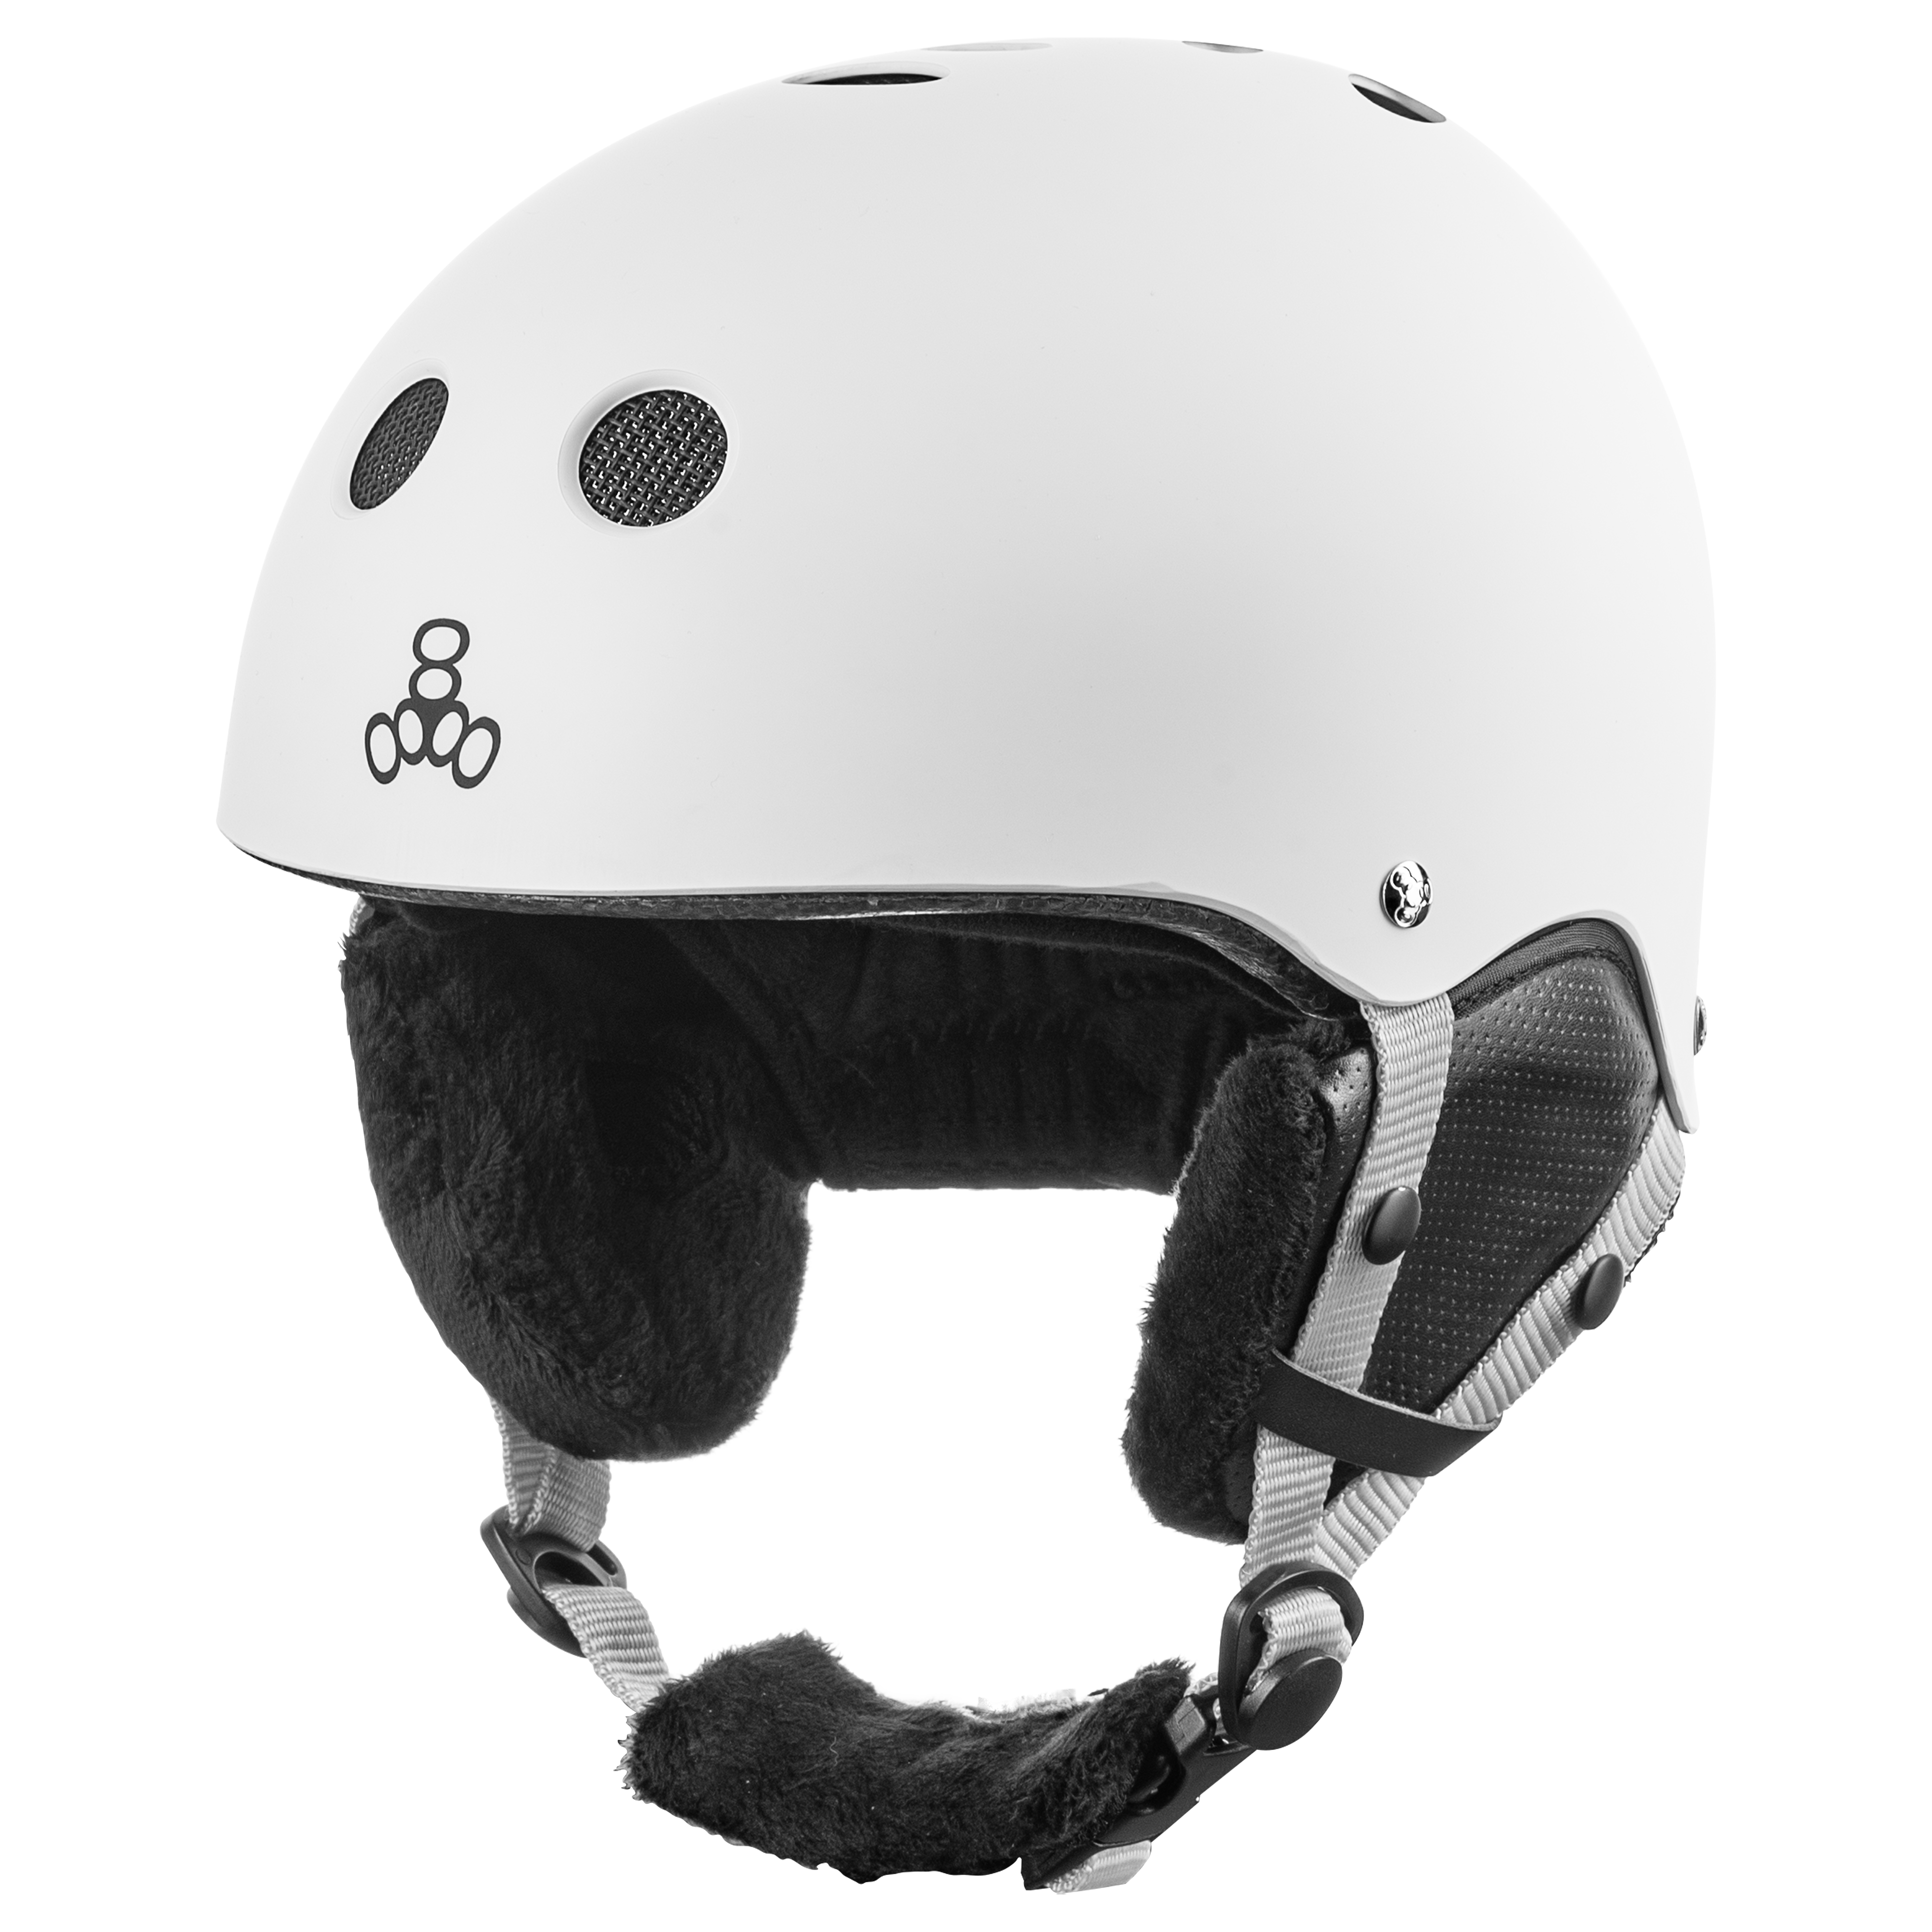 Защитный шлем для взрослых Triple8 Halo Snow Standart White Rubber (S/M)